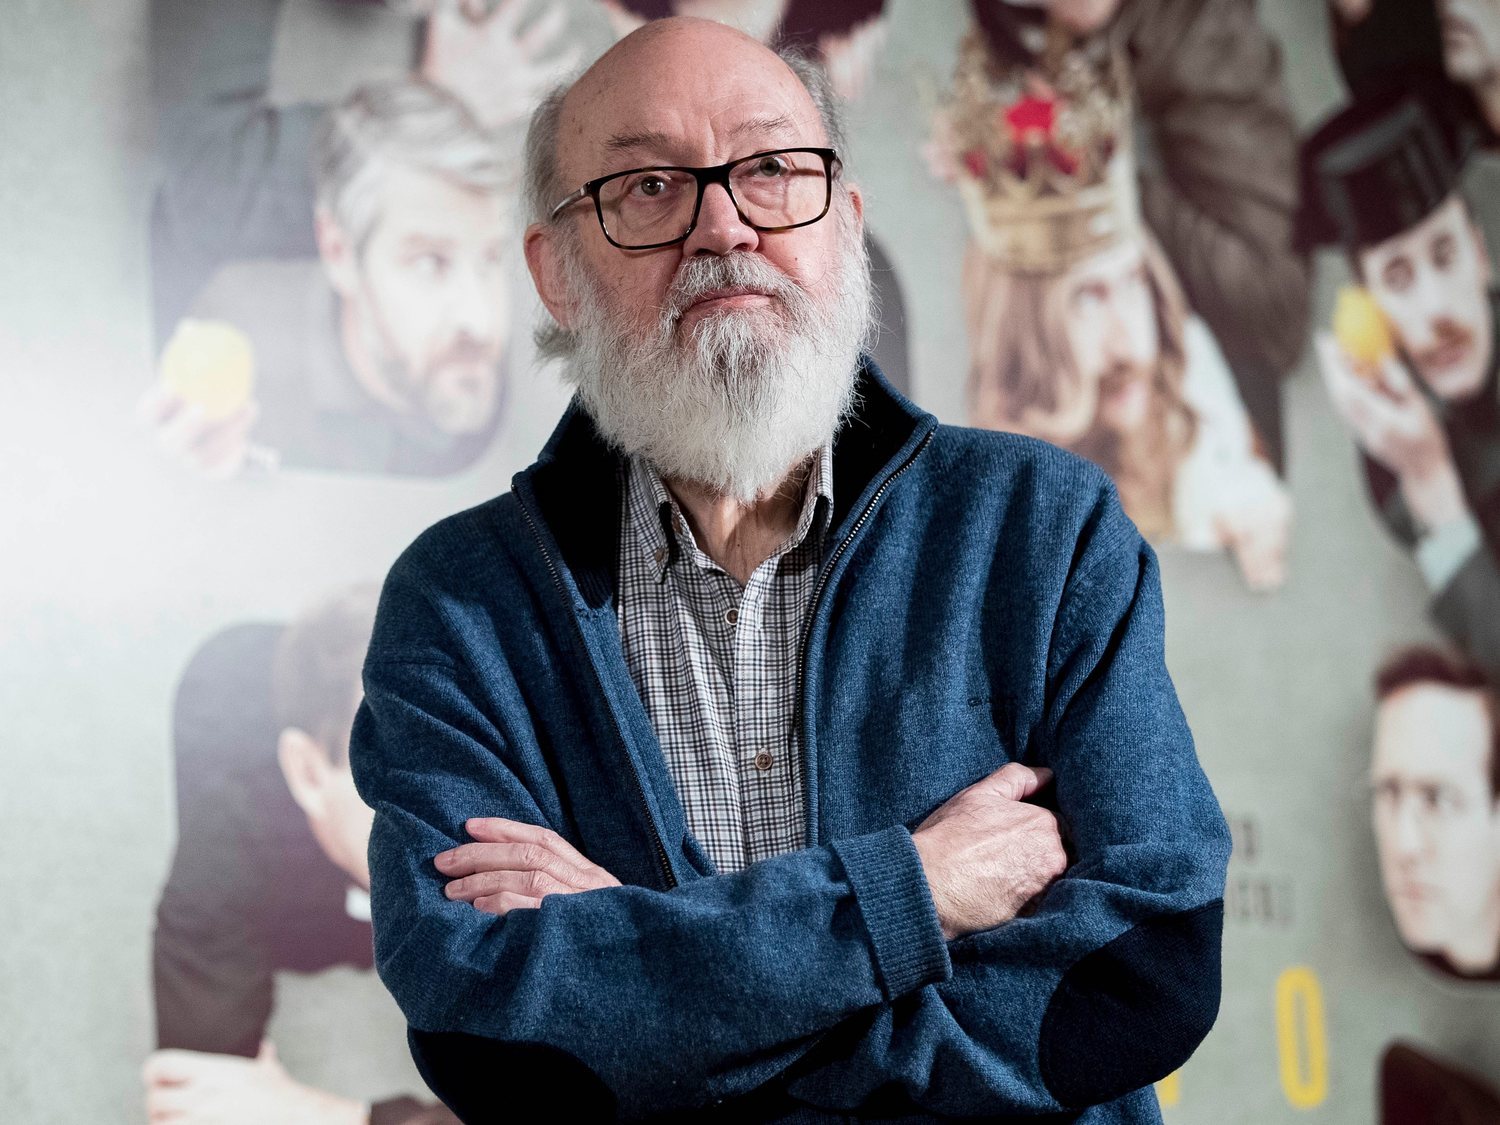 Muere el cineasta José Luis Cuerda a los 72 años